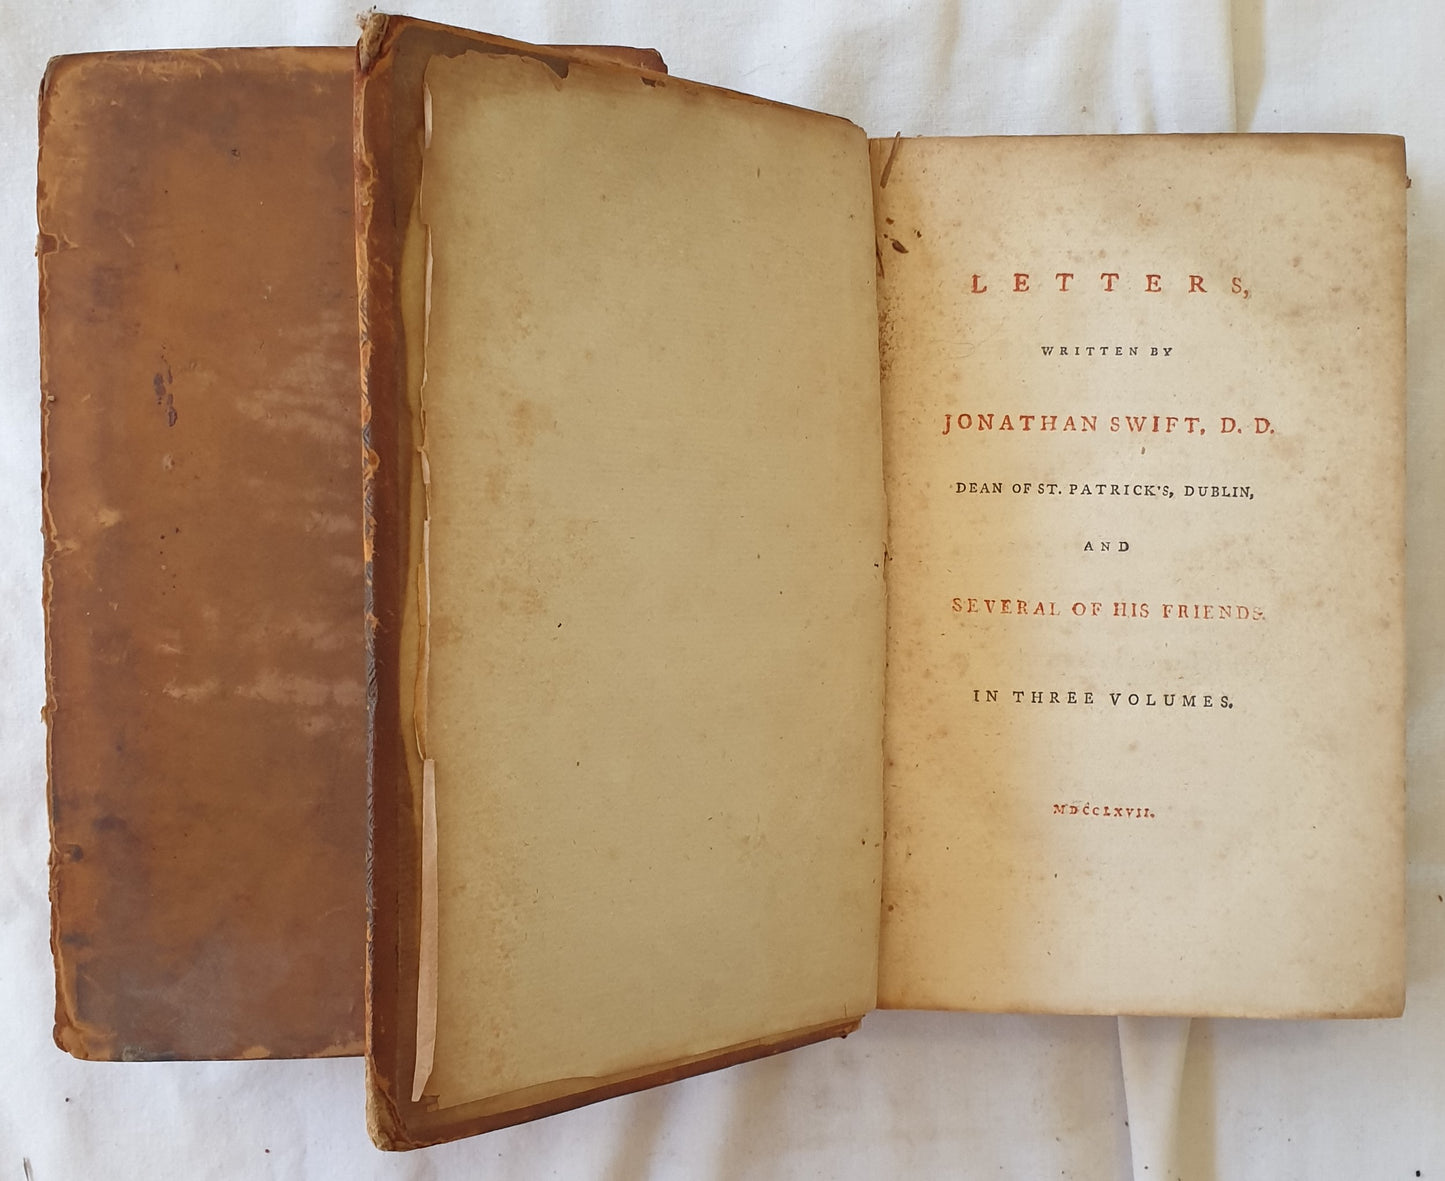 Letters, Written by Jonathan Swift, D. D.